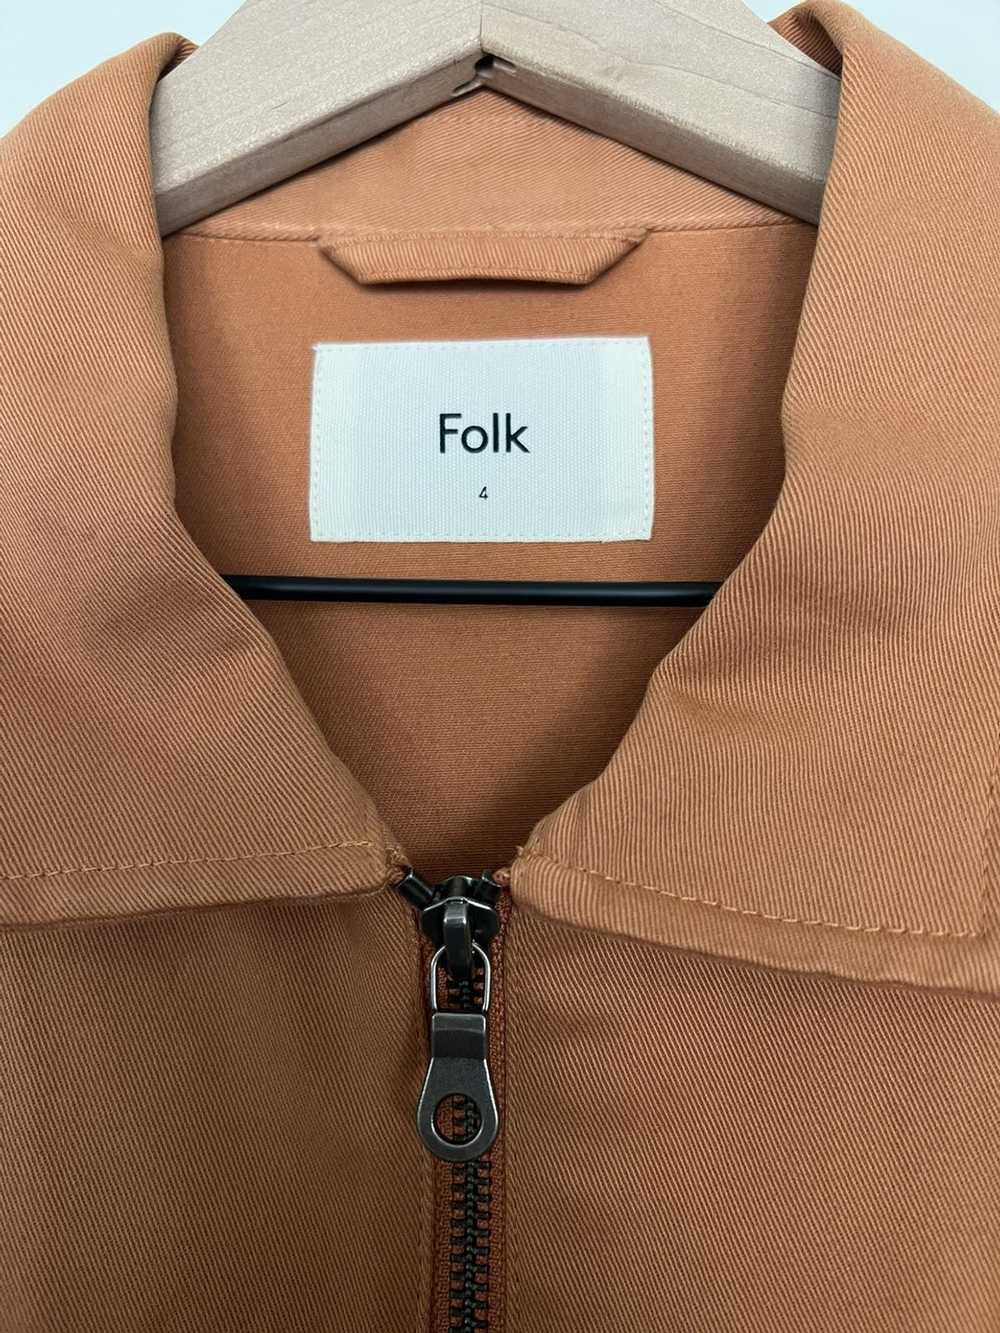 Folk Folk jacket - image 2